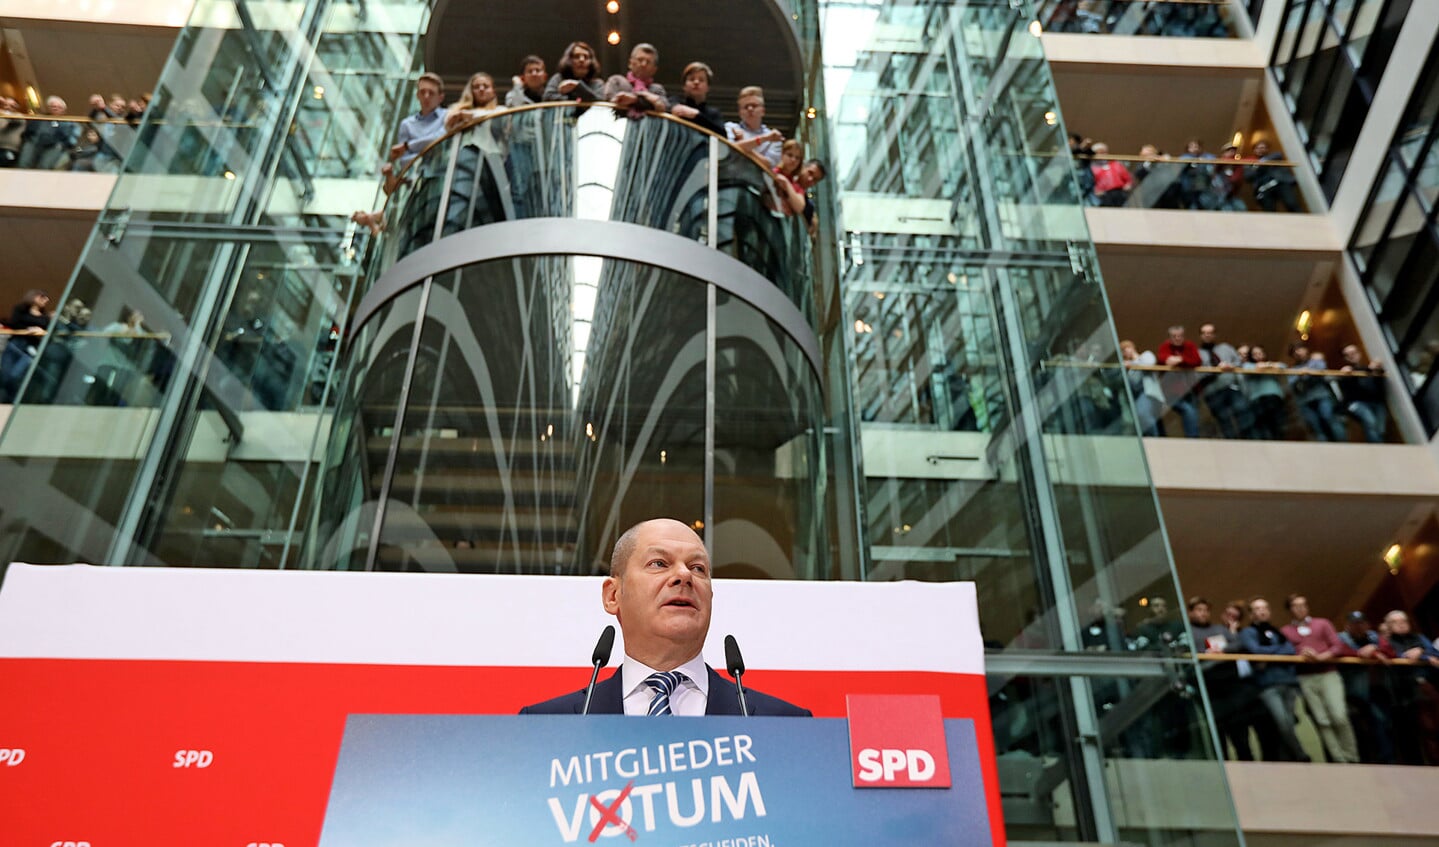 SPD-leider Olaf Scholz tijdens de bekendmaking in het SPD-hoofdkwartier in Berlijn, het Willy Brandt-Huis. ‘De SPD zal toetreden tot de volgende Duitse regering.’